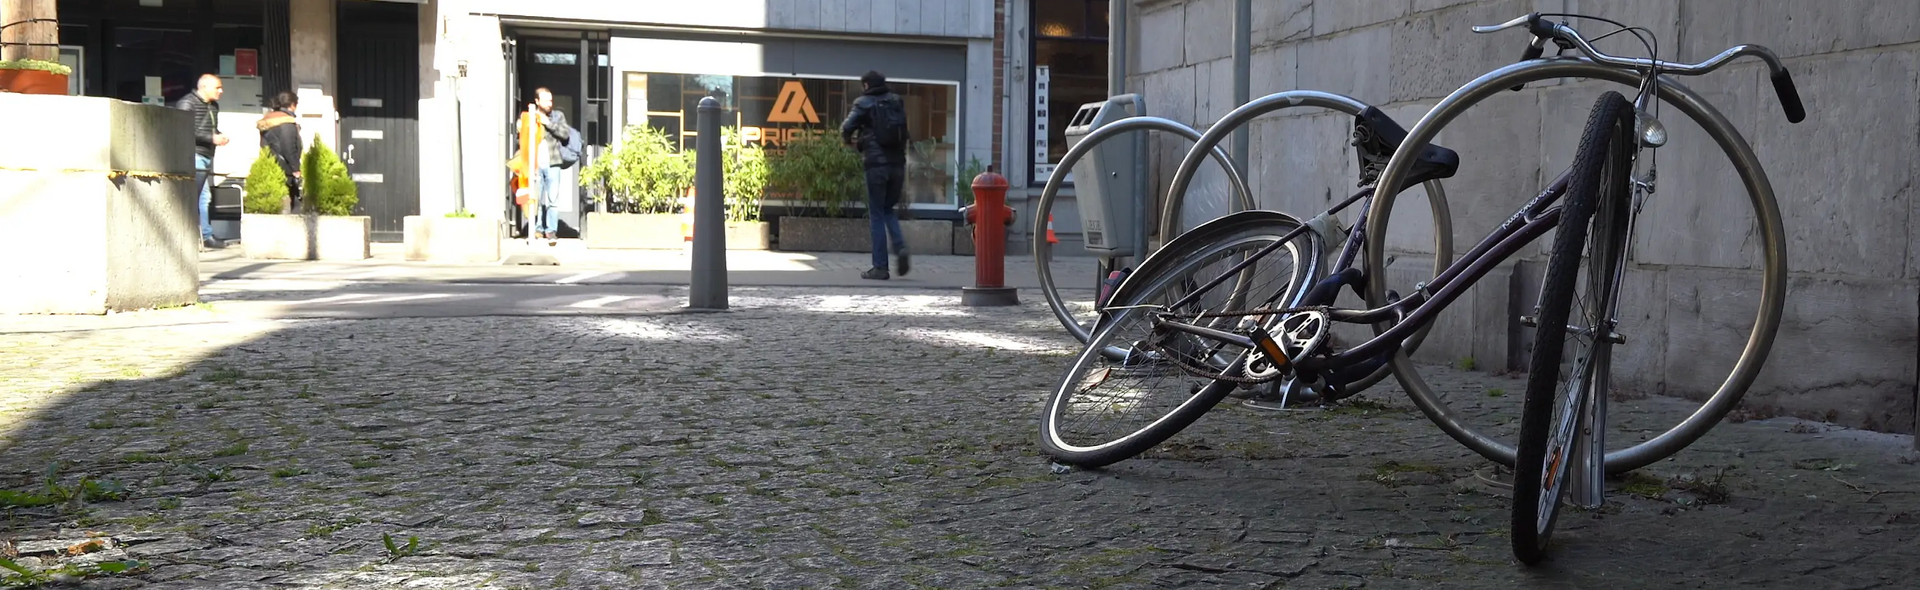 ReCycle - Des vélos abandonnés, des vélos à réparer, une nouvelle chance à donner